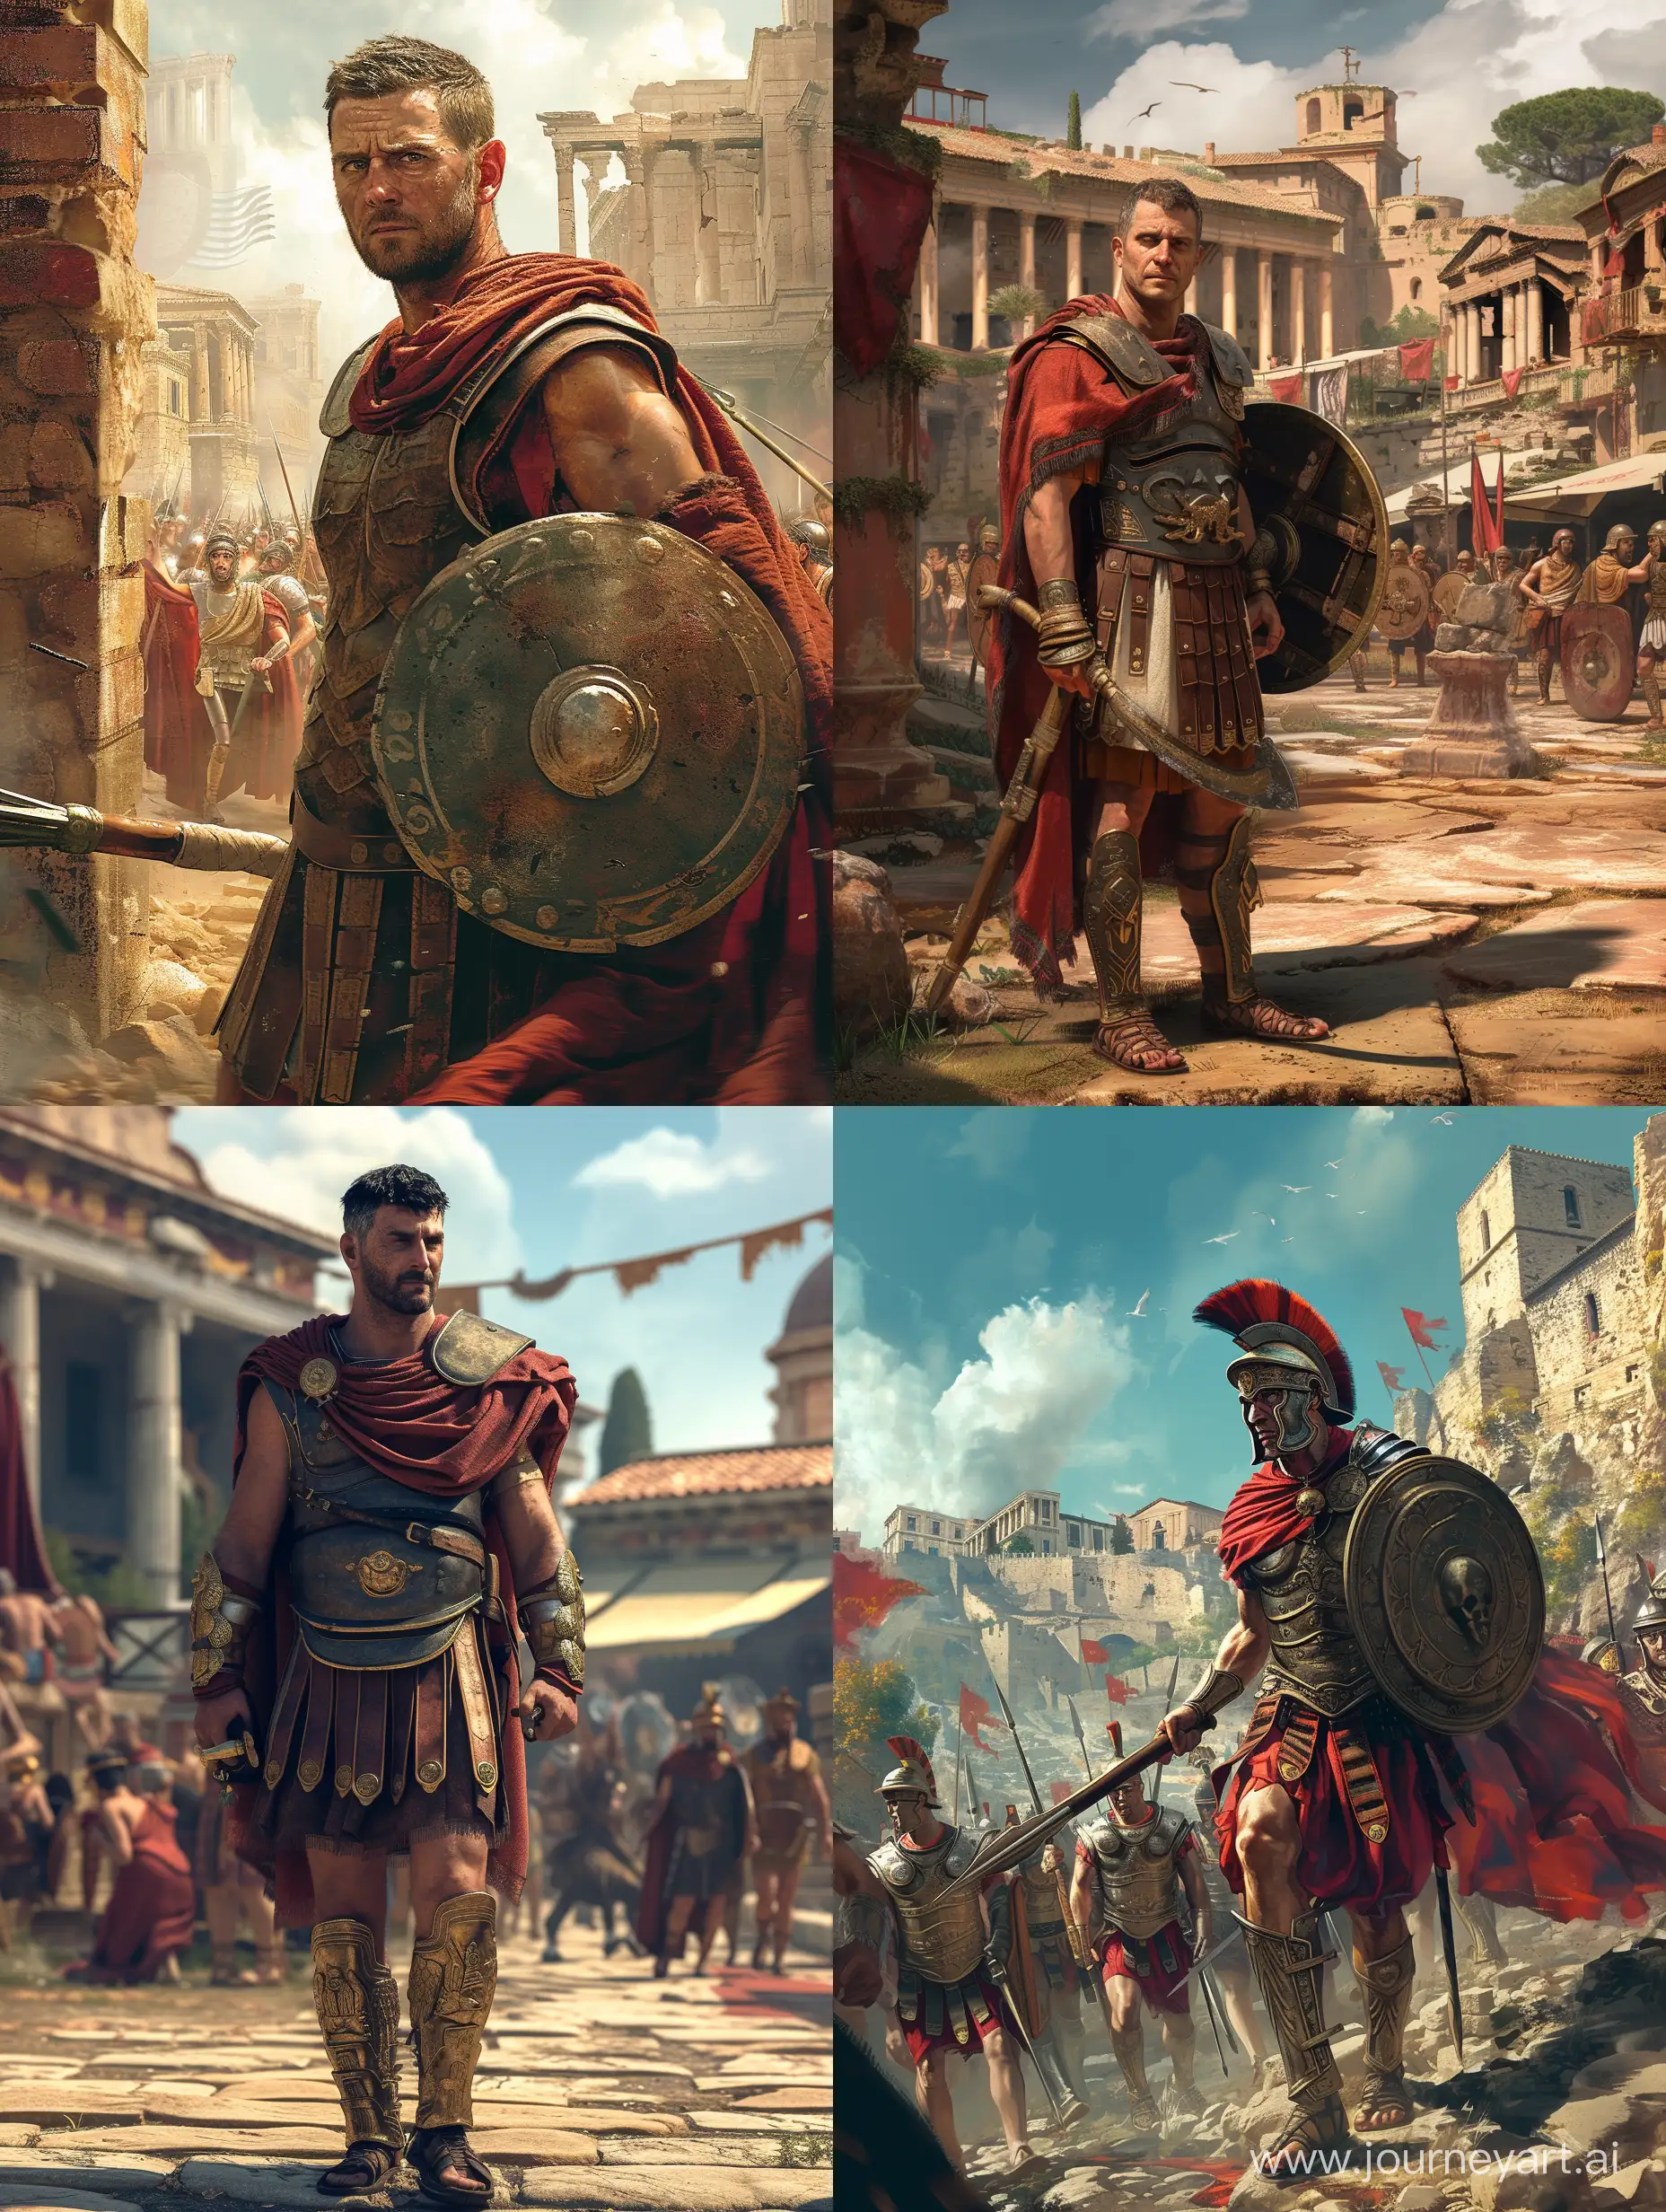 high-resolution, thrakischer kämpfer römische zeit in antike stadt, 4k realistic